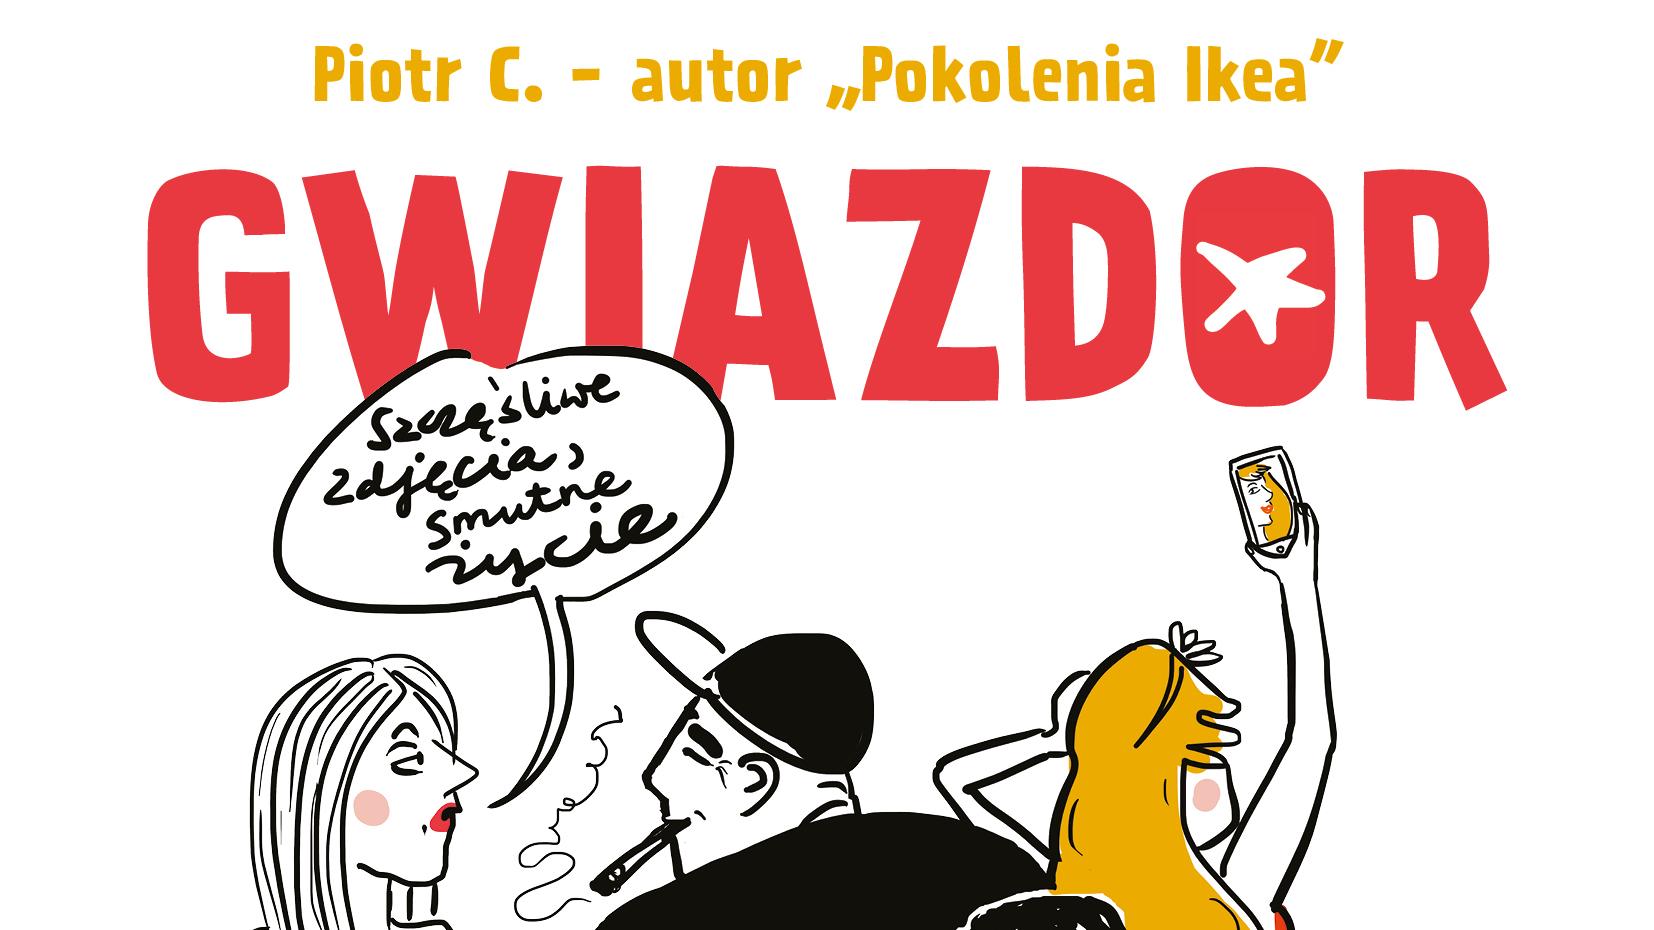 Jak Sie Bawia Celebryci Piotr C Nowa Powiesc Gwiazdor Przeczytaj Fragment Ksiazki